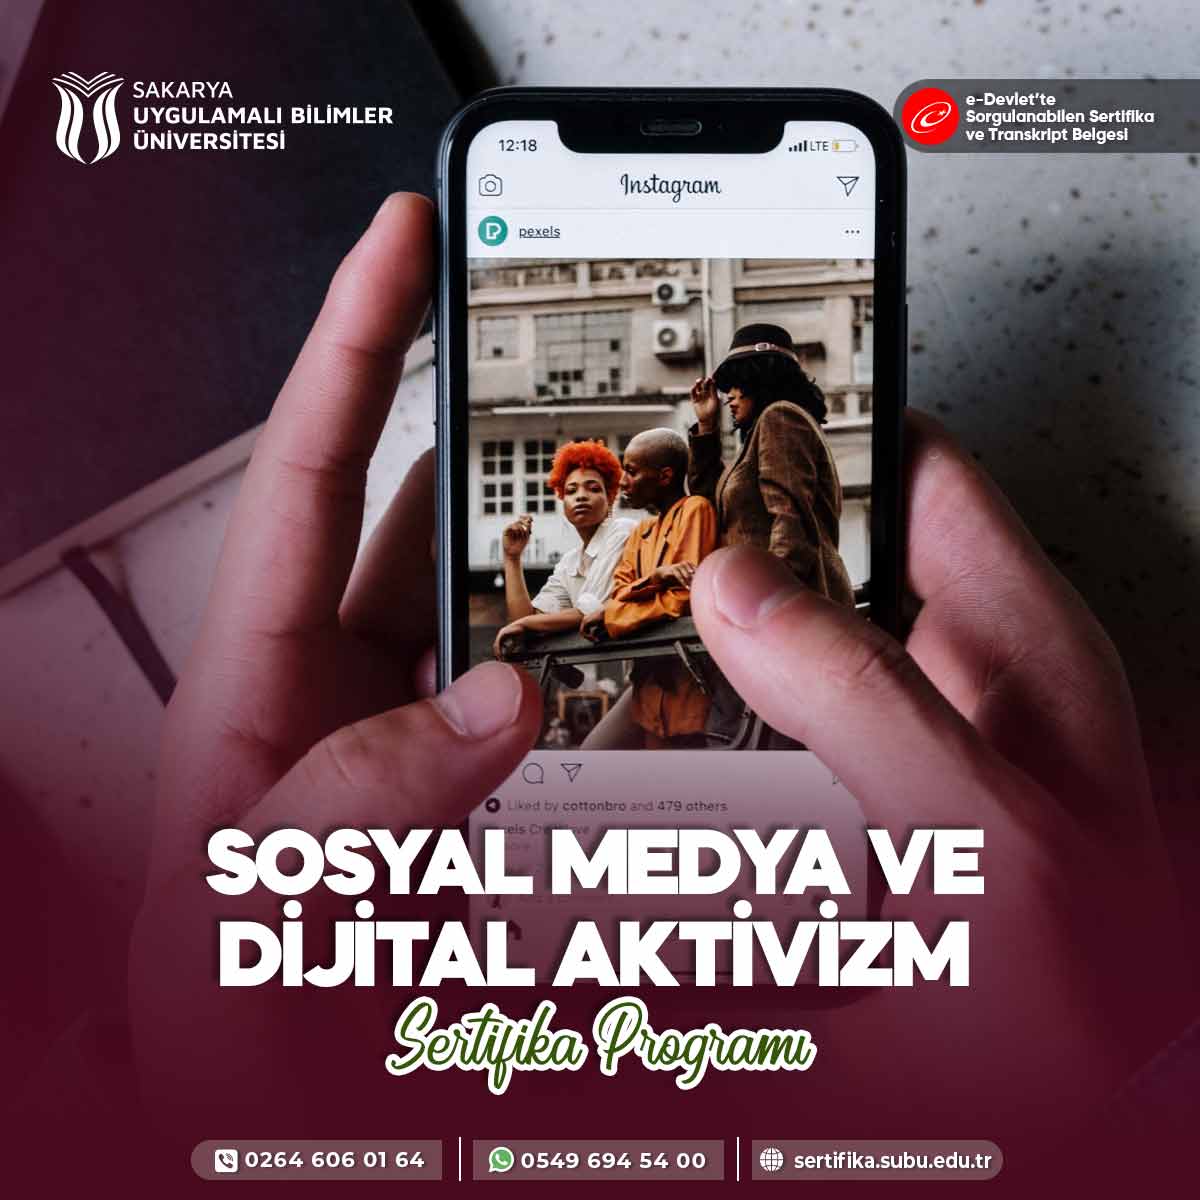 Sosyal Medya ve Dijital Aktivizm Sertifika Programı